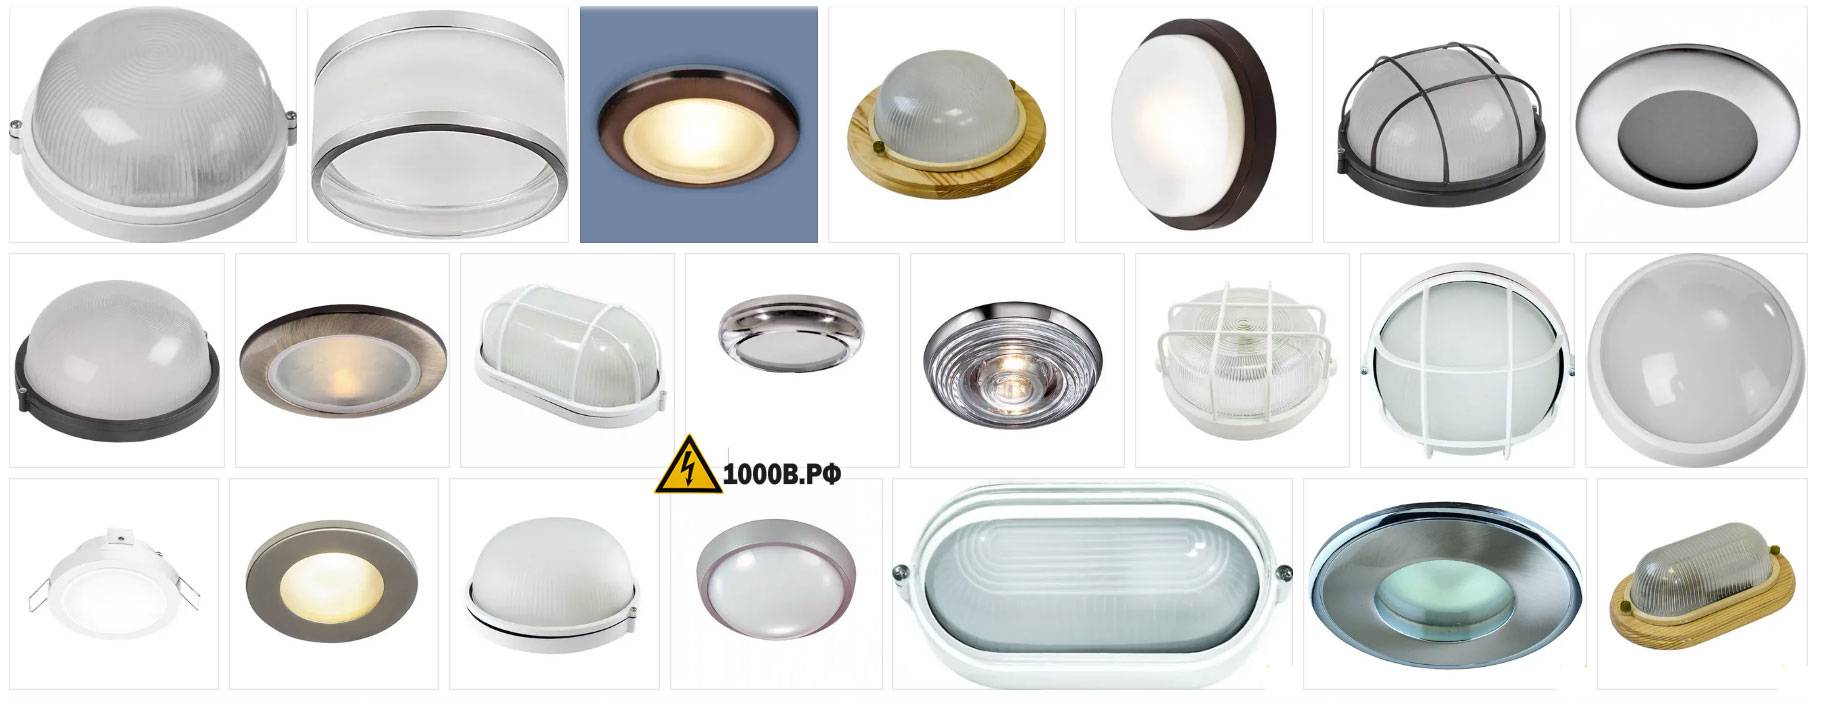 Влагозащищенные точечные светильники для ванной комнаты | онлайн-журнал о ремонте и дизайне